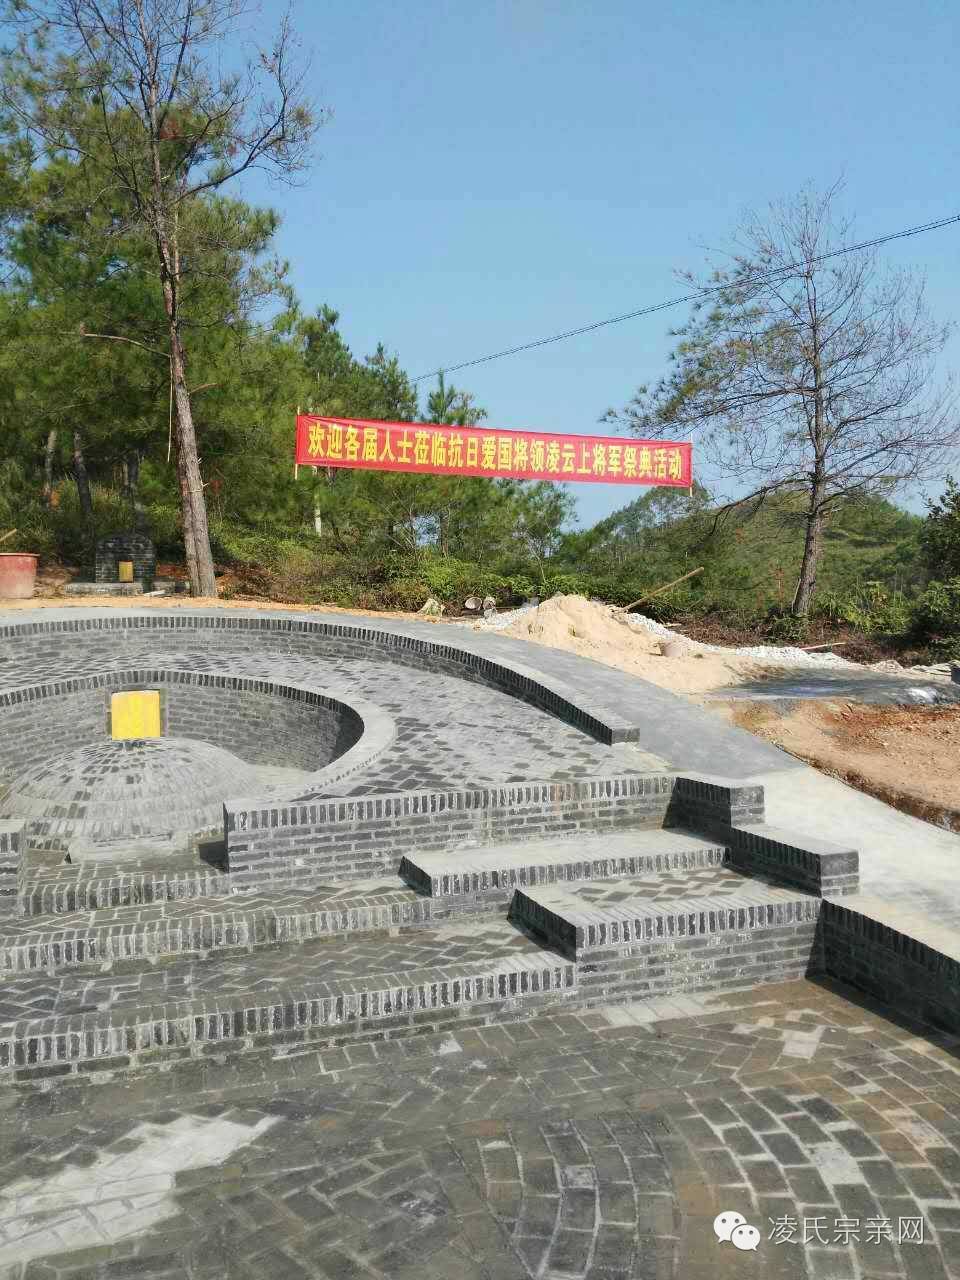 广西桂平罗秀镇,凌云上将军墓在各届人士支持下重修,今日举行祭奠活动